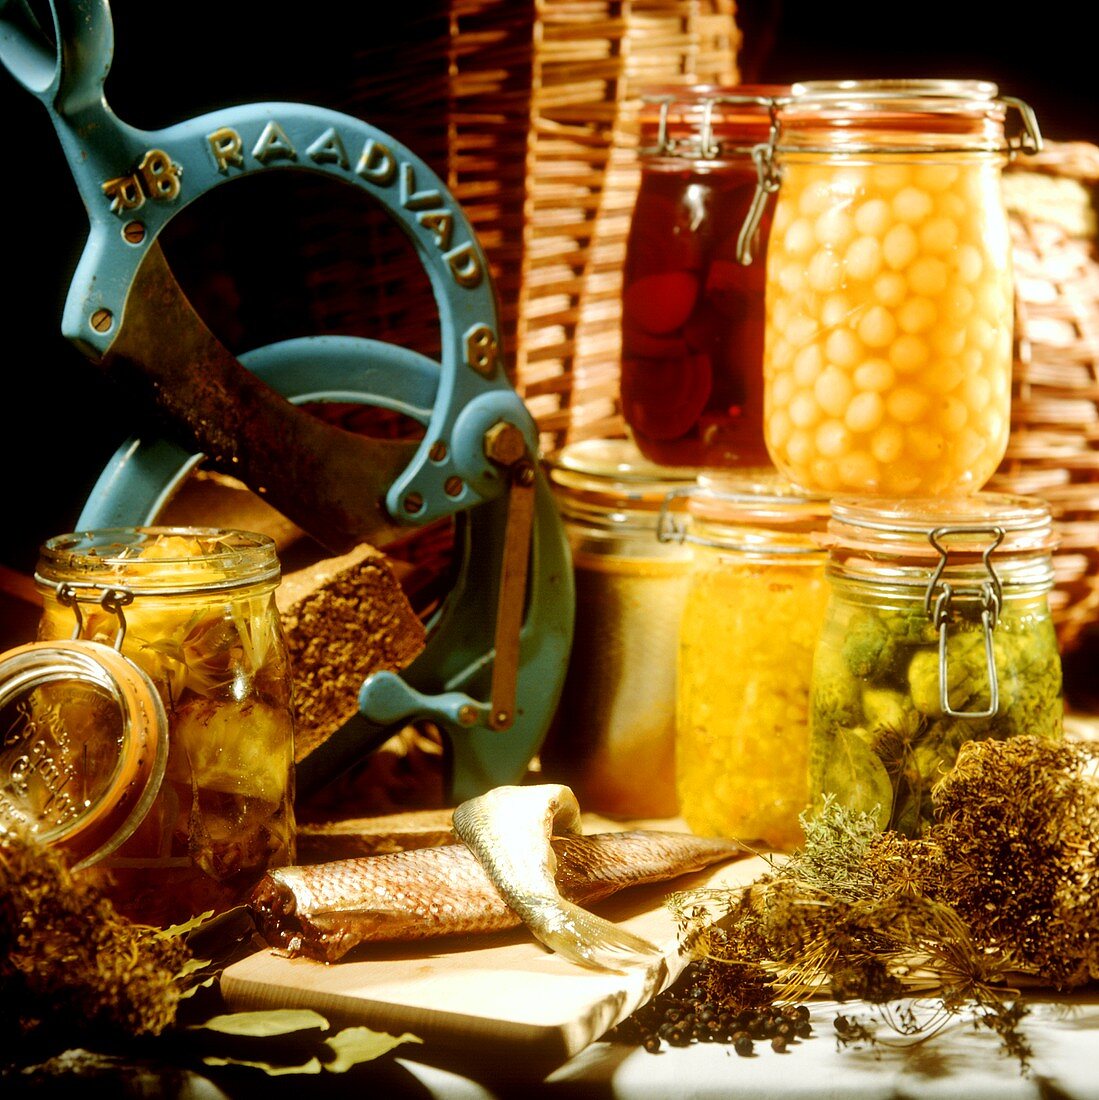 Herrings; bottled vegetables in jars; dried herbs